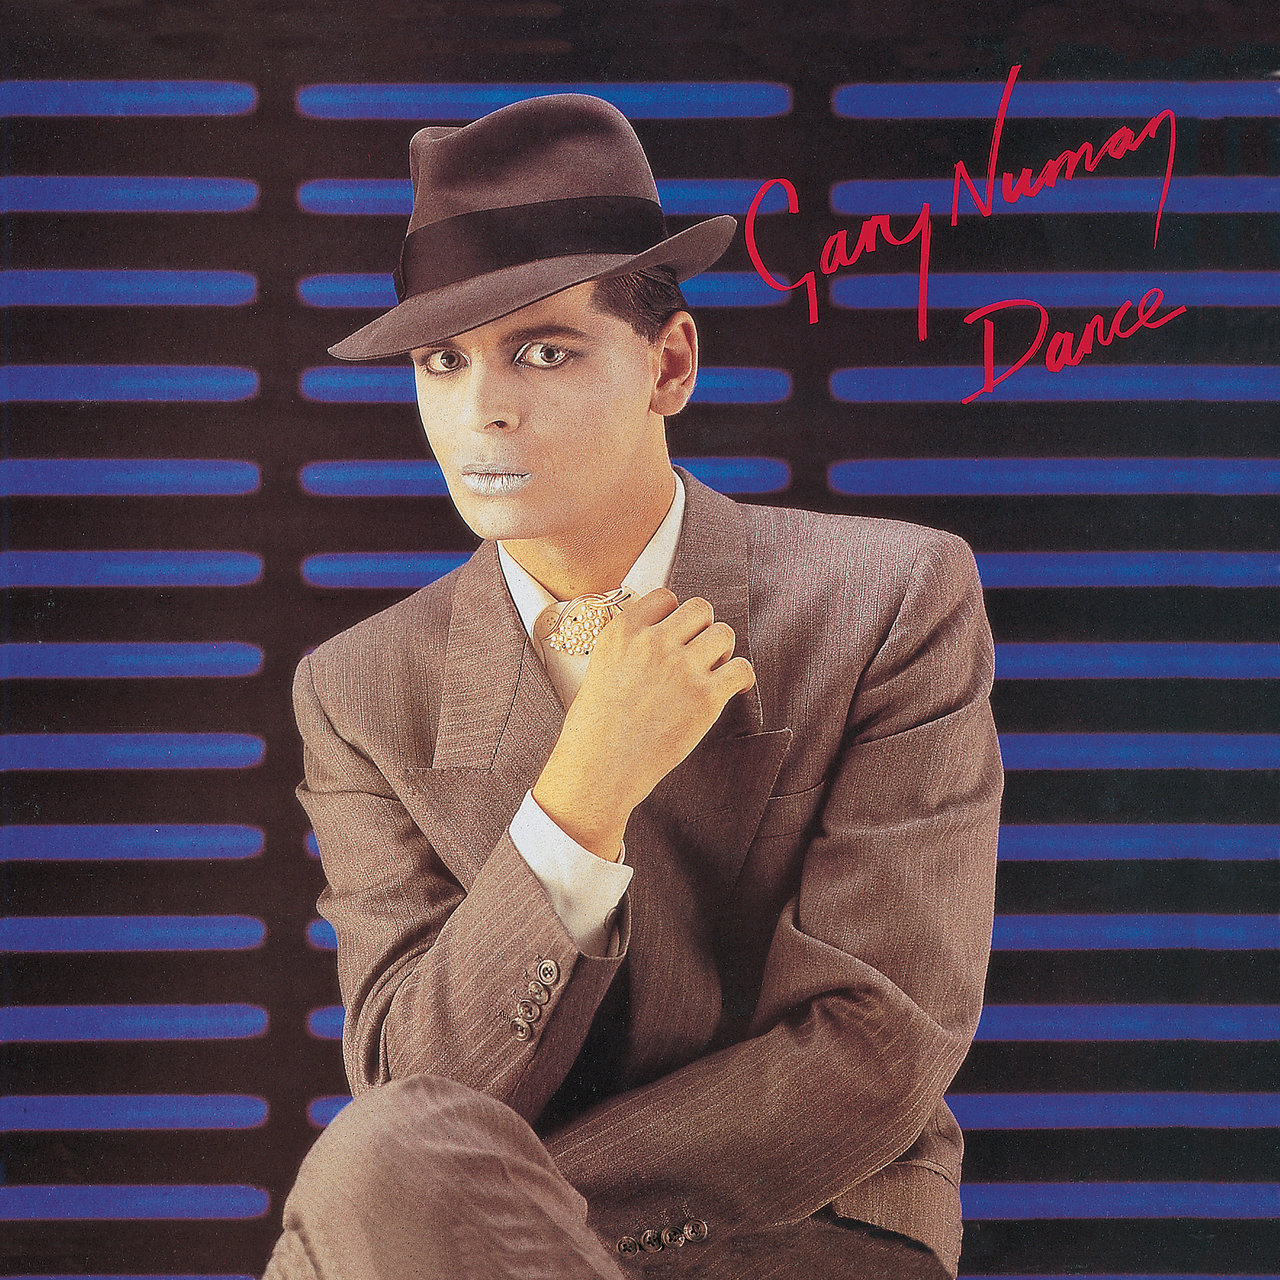 Gary Numan - Dance [1981]